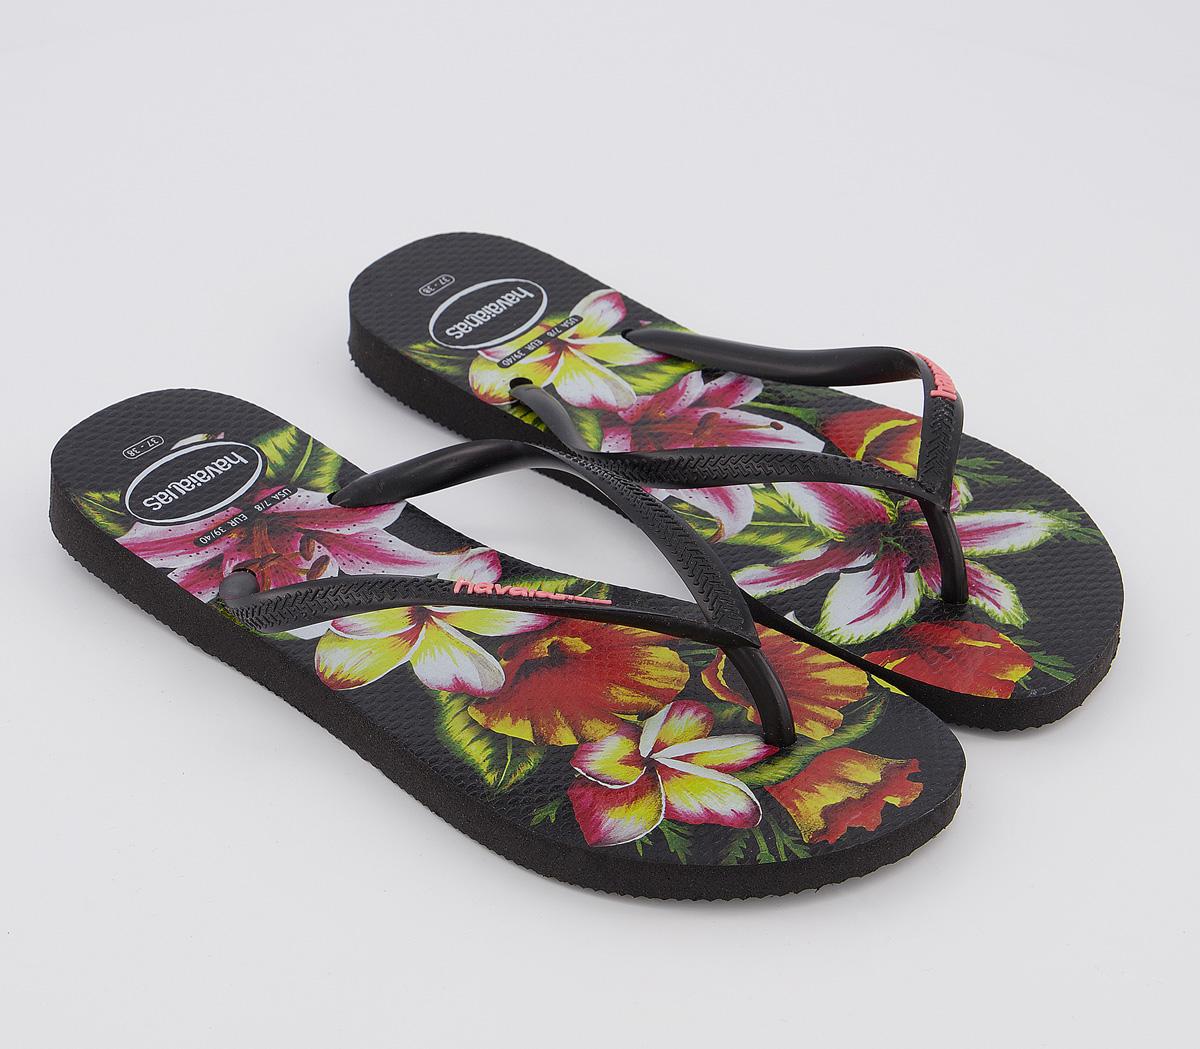 Havaianas Slim Floral Flip Flops Black - Womenâs Sandals